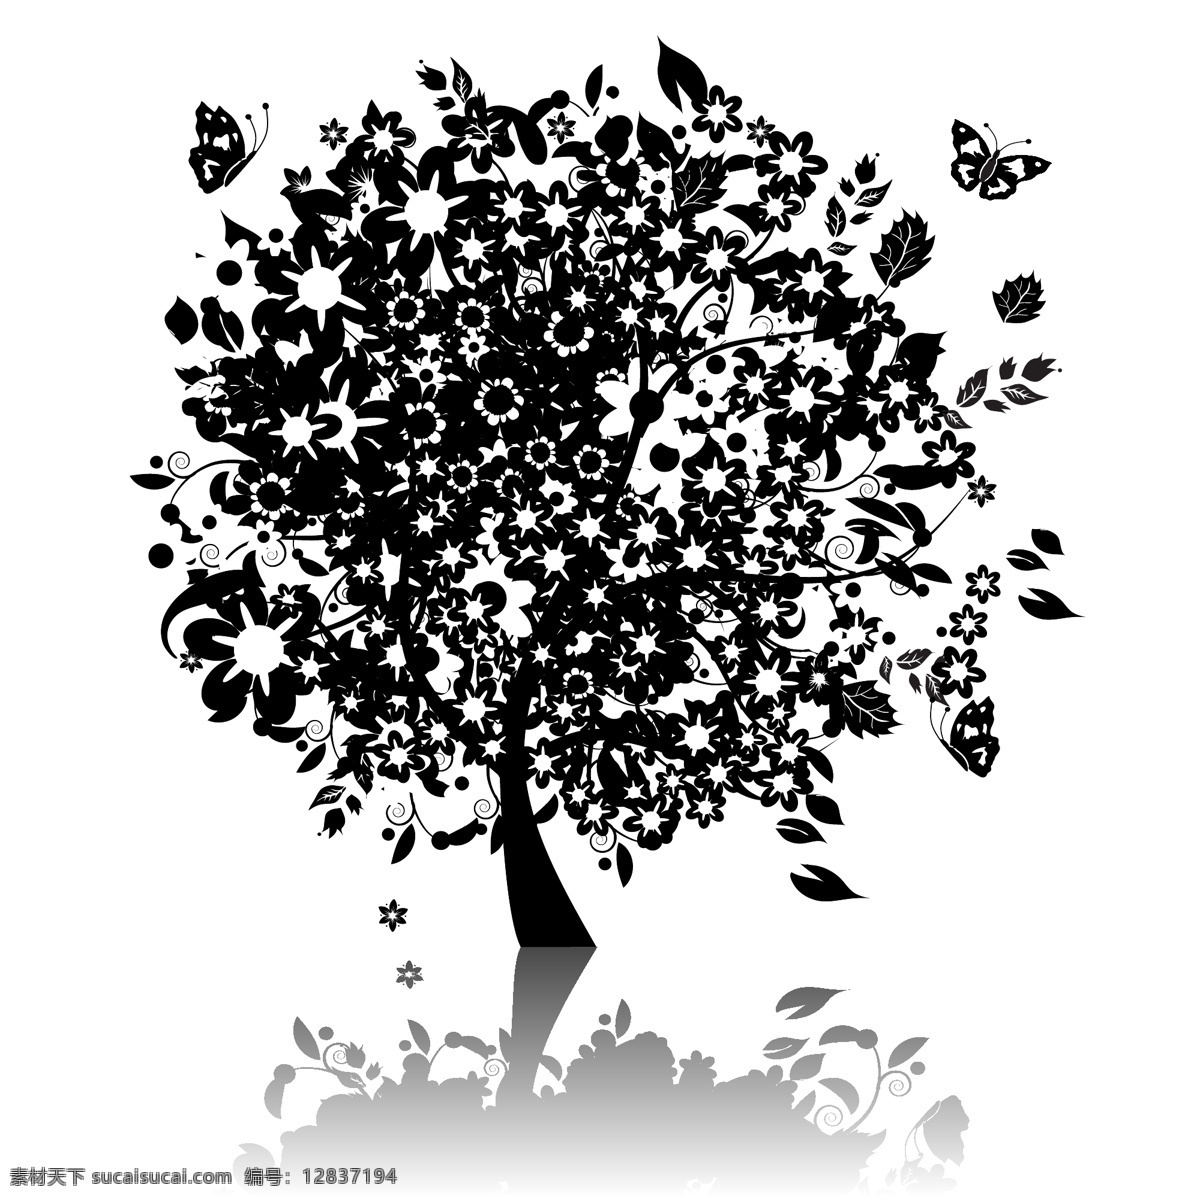 树木素材 抽象树 时尚花纹 时尚潮流 树 潮流花纹 插画树木 卡通树木 花草树木 生物世界 矢量素材 白色